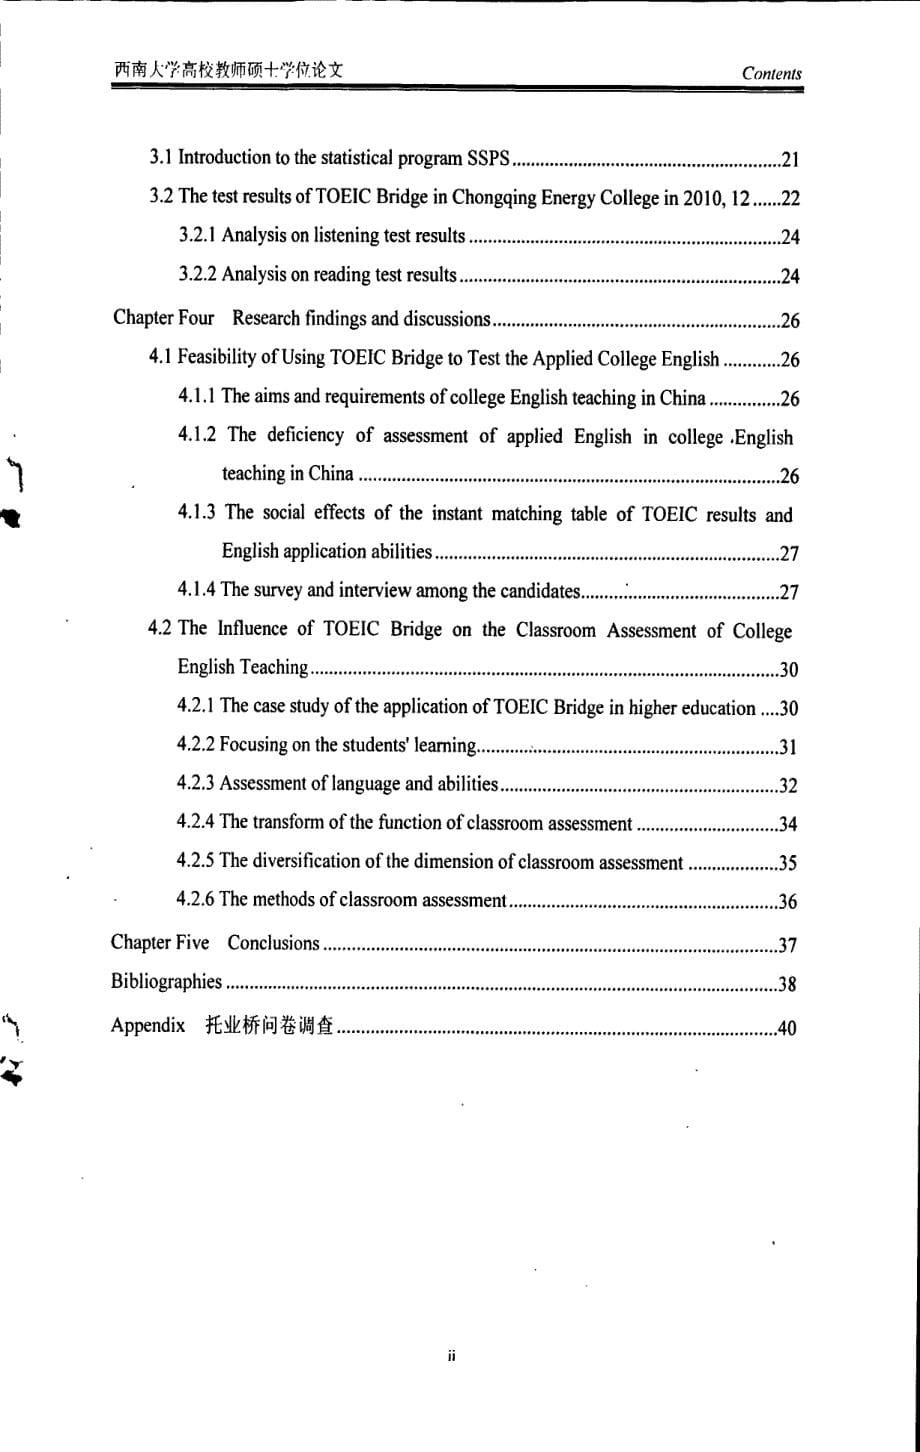 托业桥考试及其对高职高专英语课堂评估的影响_第5页